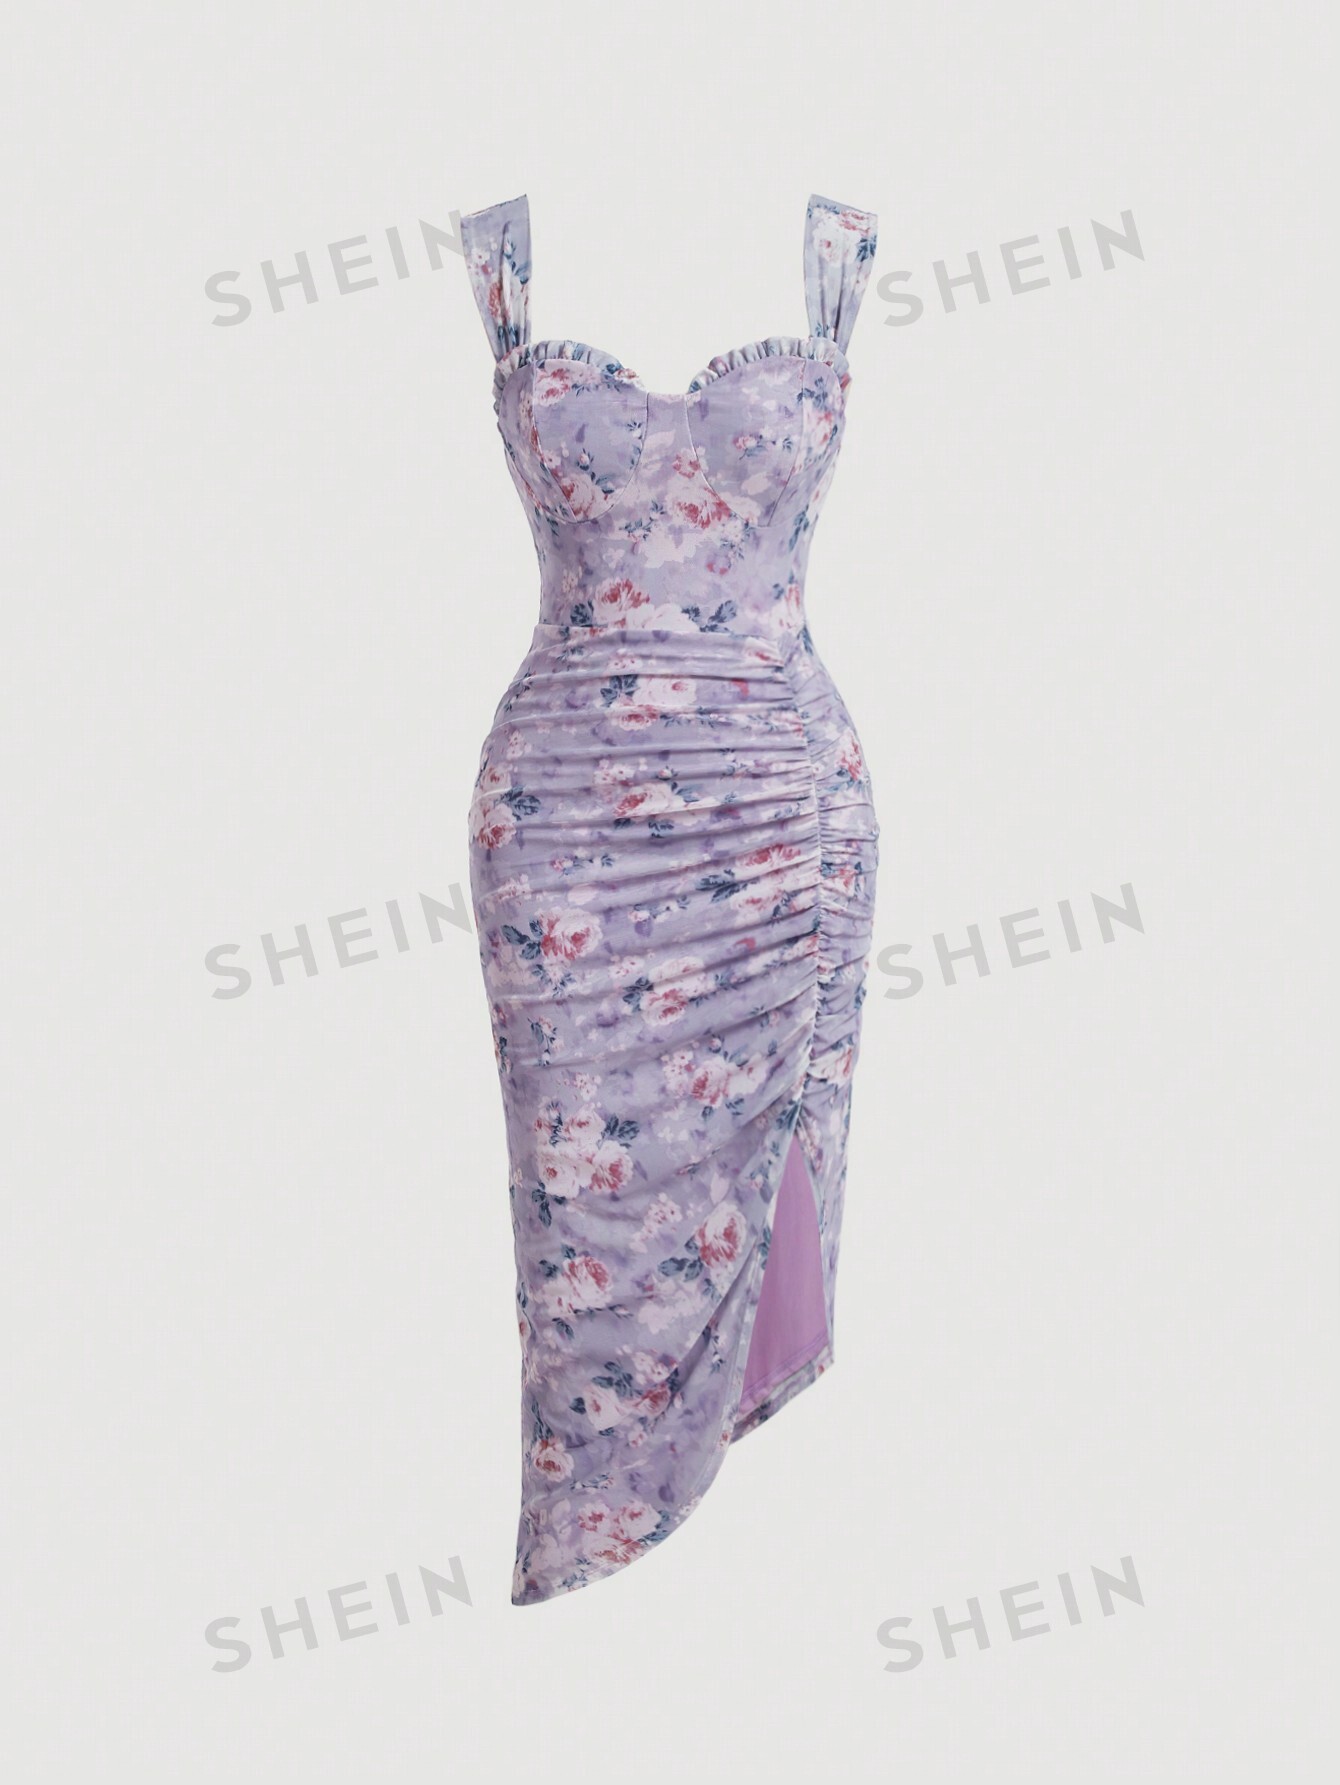 SHEIN MOD Женское плиссированное платье макси с разрезом спереди и цветочным принтом, сиреневый фиолетовый длинное вечернее платье русалка бордовое атласное плиссированное платье с высоким разрезом сбоку арабское дубайское официальное женское